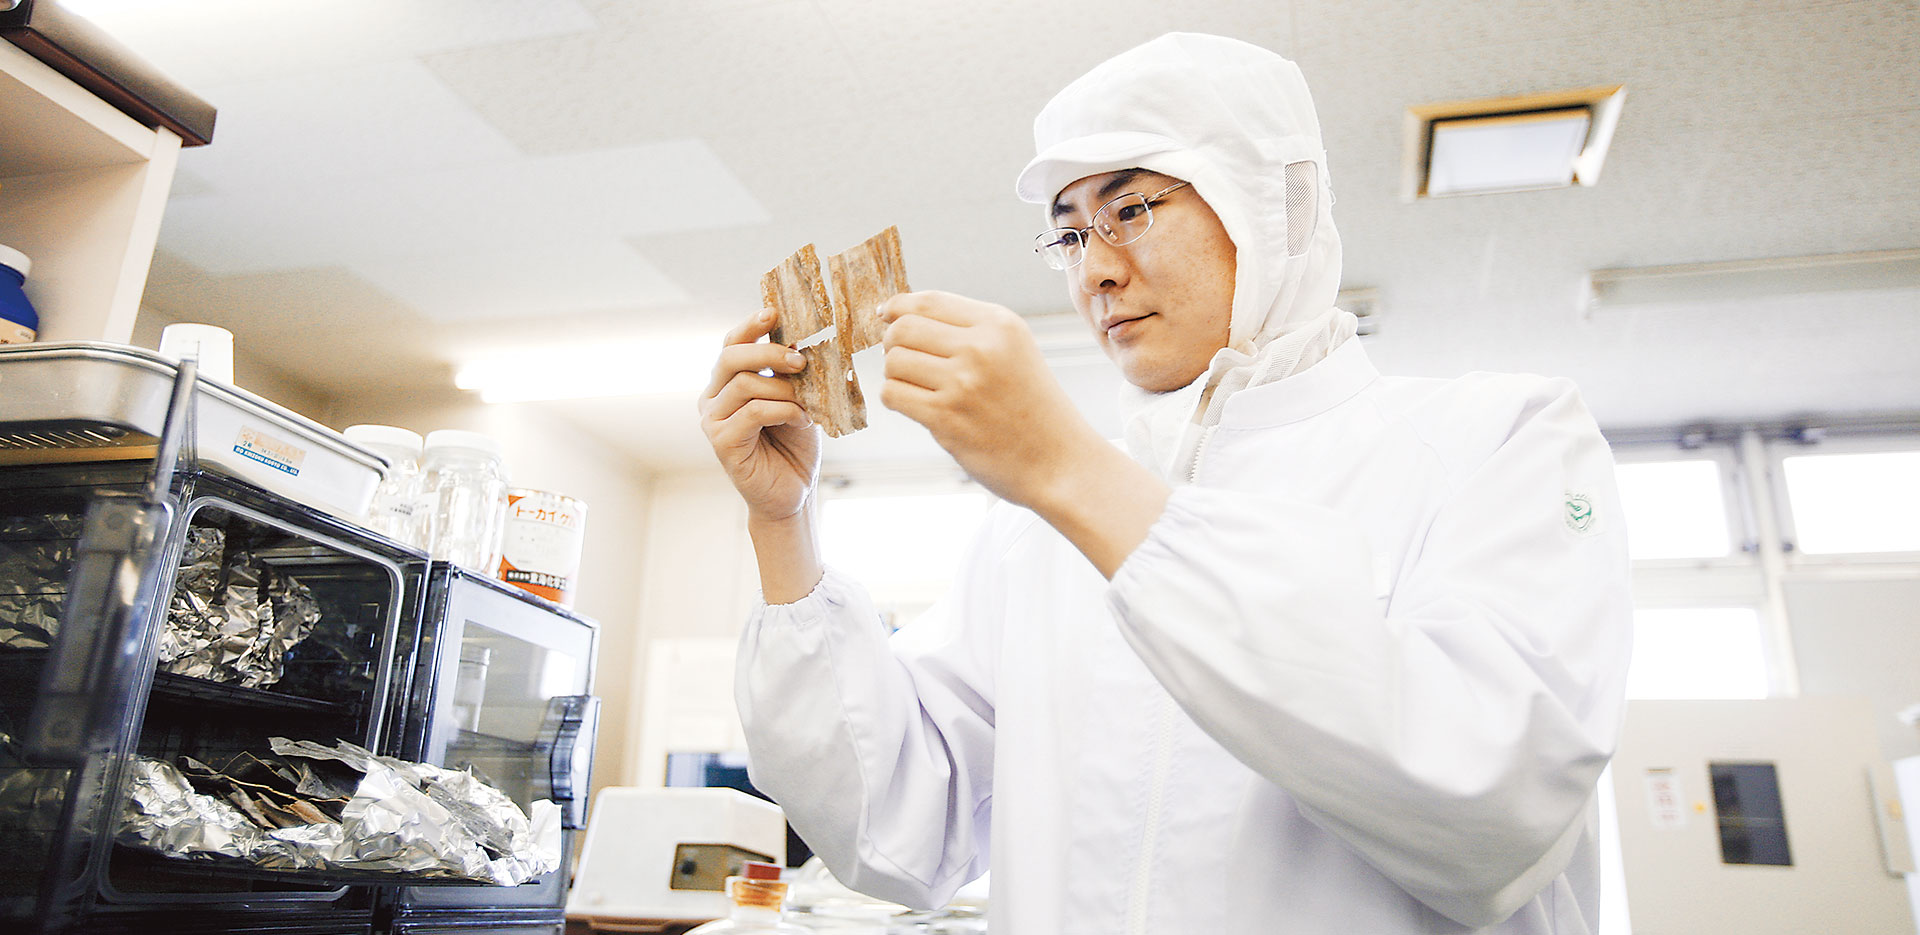 Kỹ sư công nghệ thực phẩm Nhật Bản làm công việc gì?